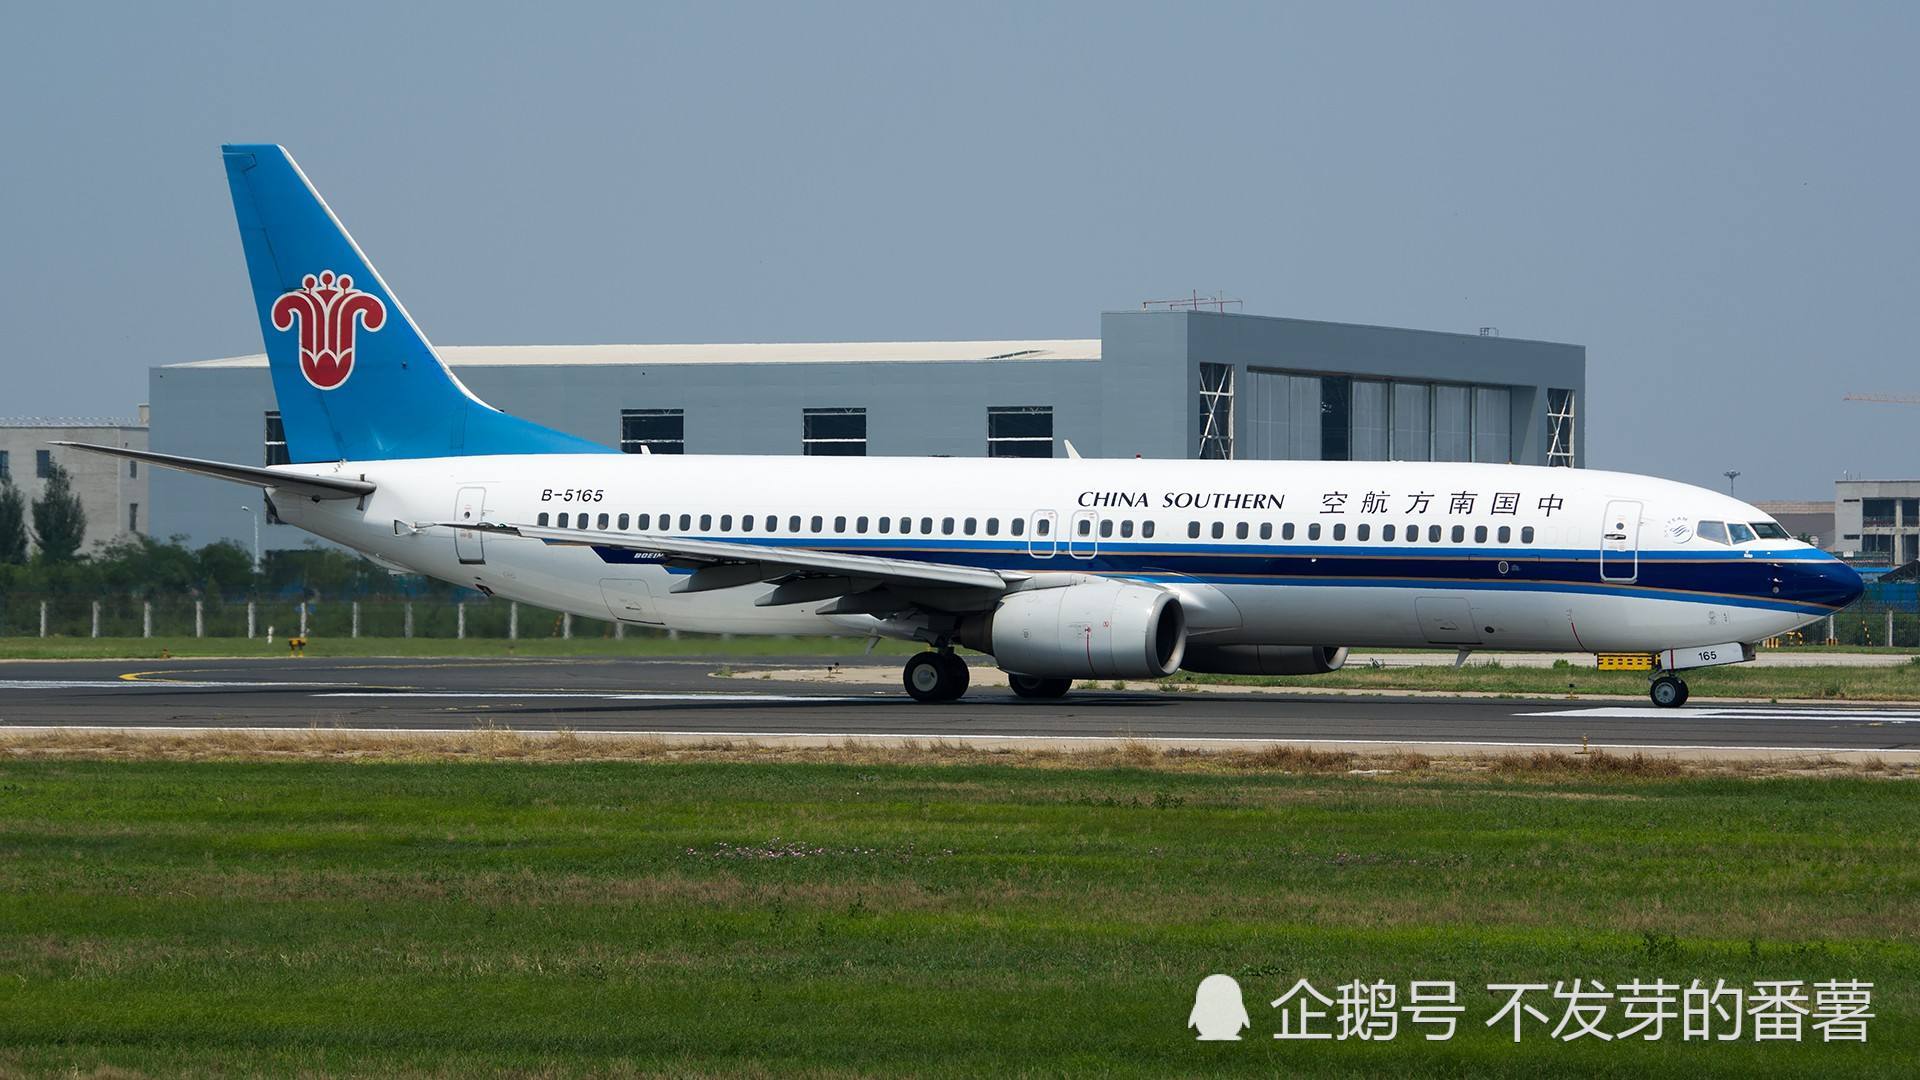 国内客流量最多的十大机场出炉,深圳杭州重庆